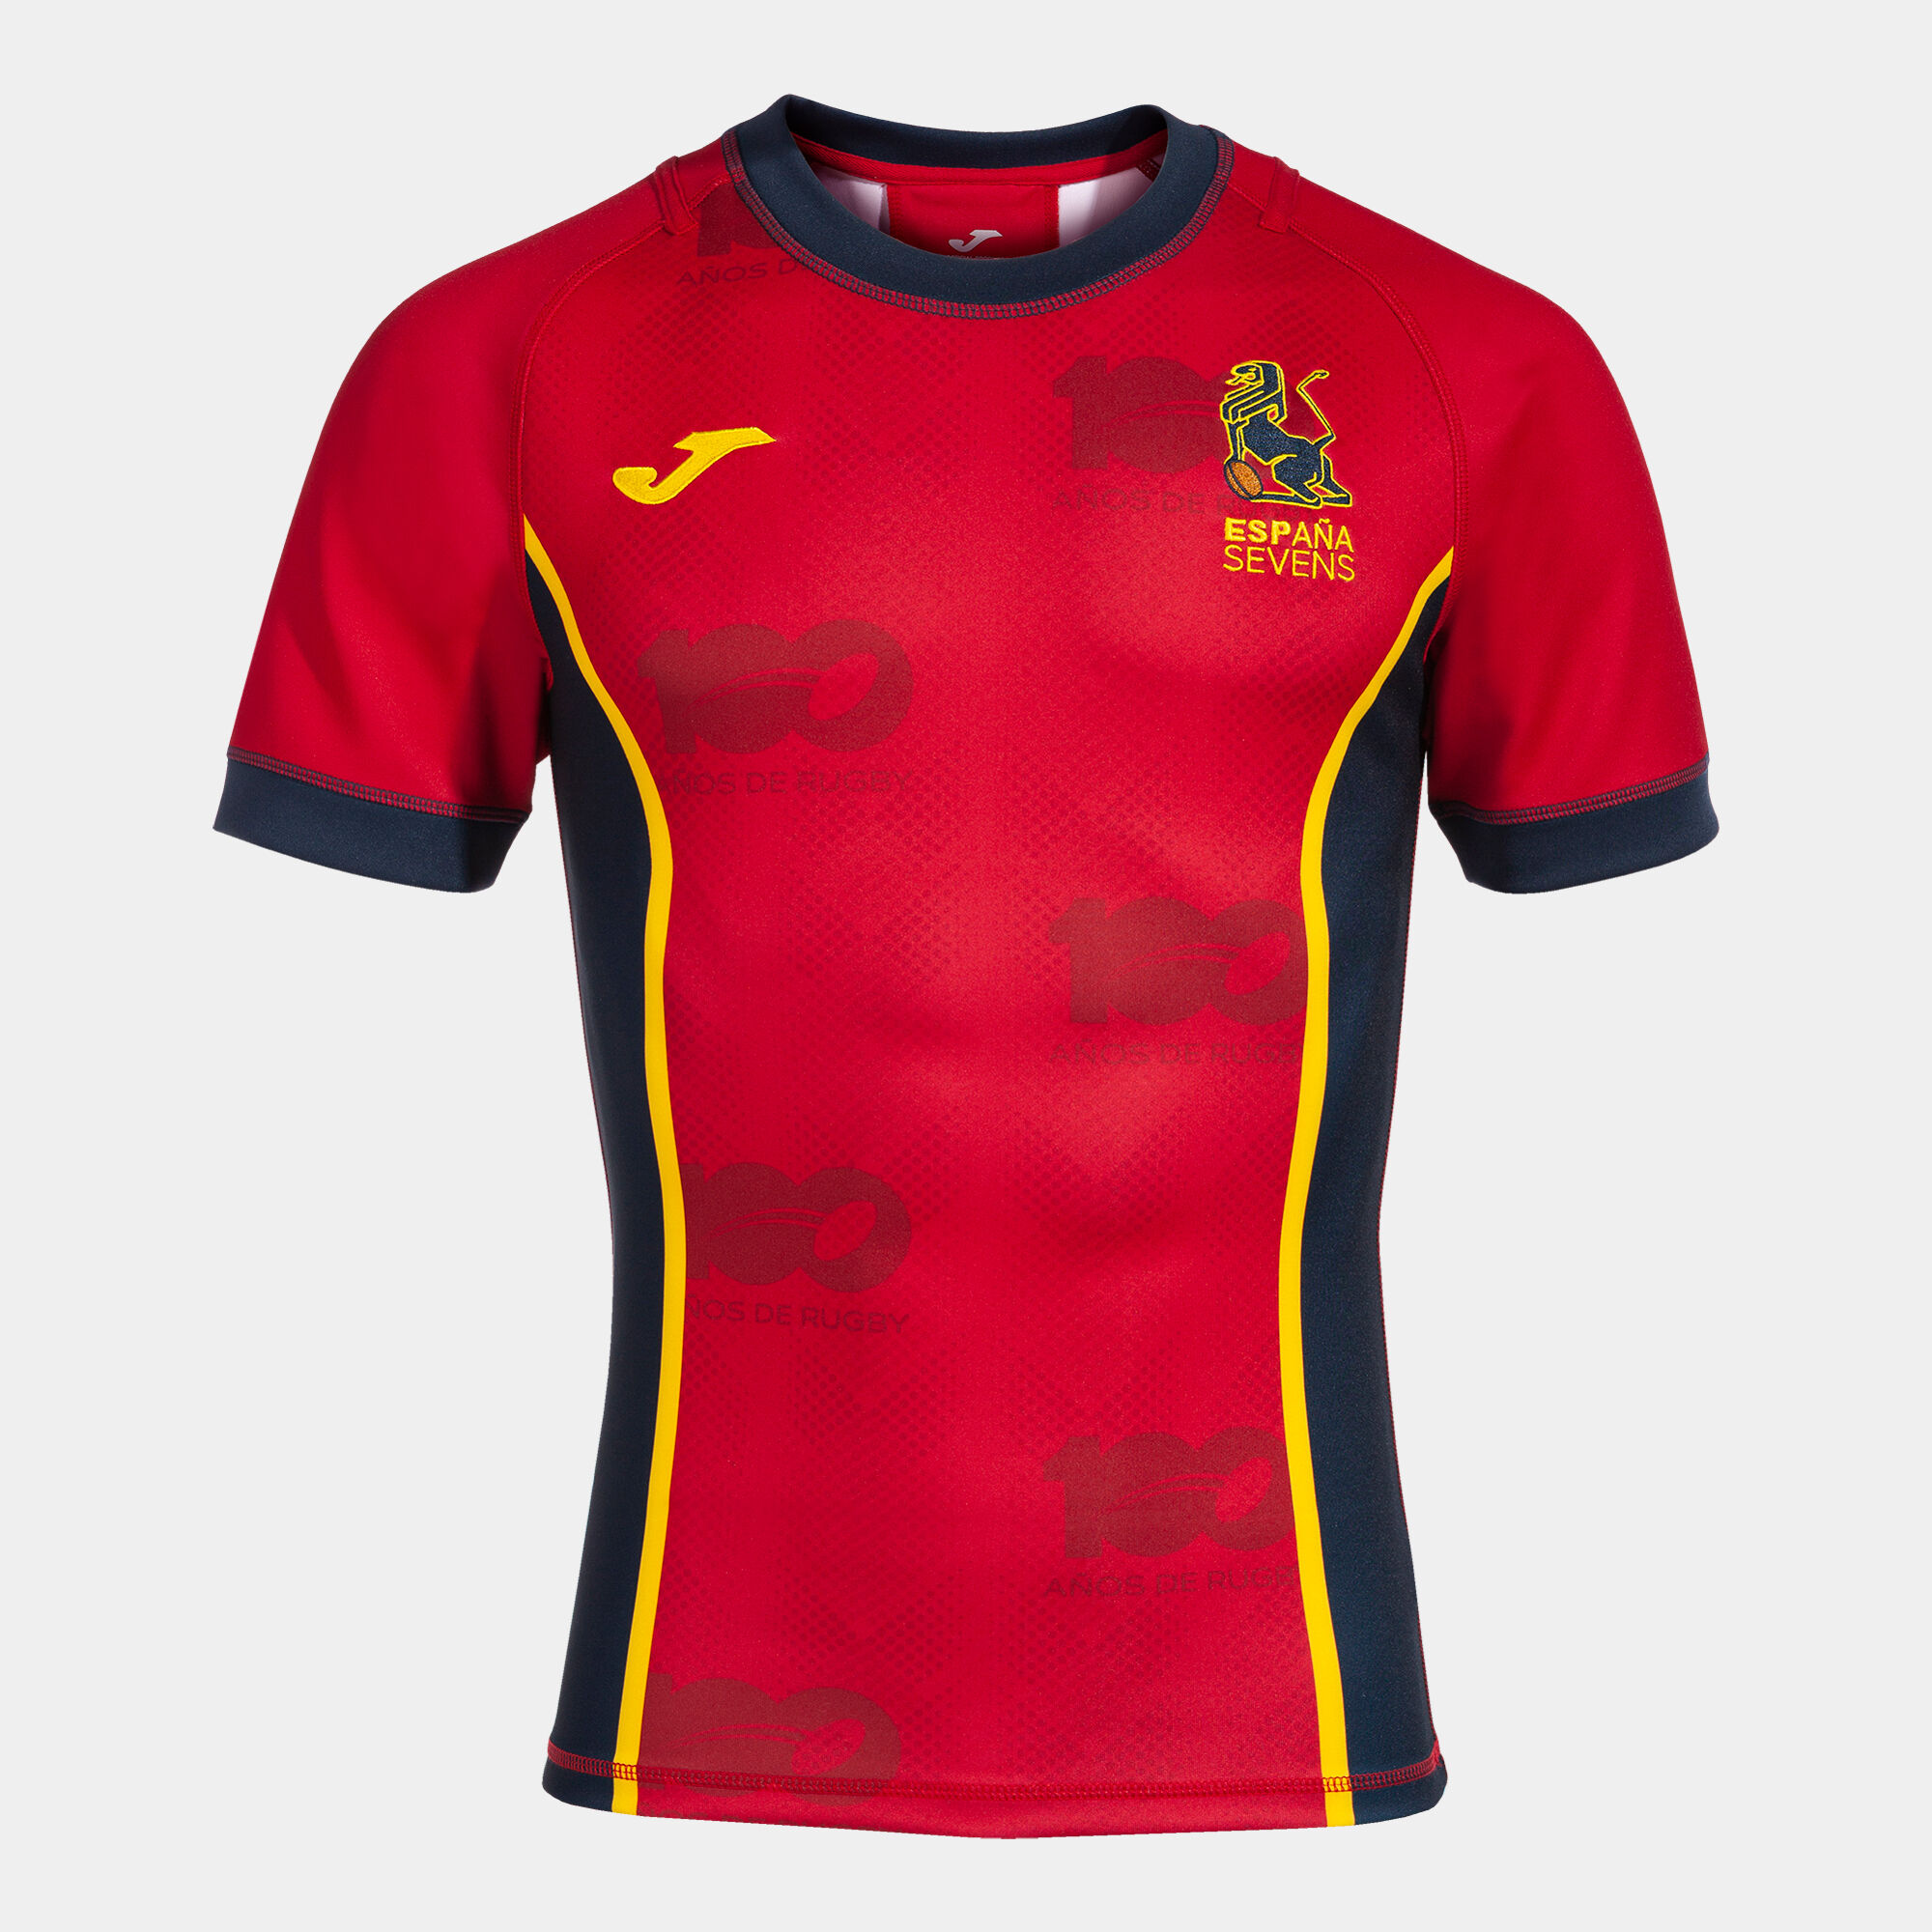 Camiseta manga corta 1ª equipación Federación Española Rugby